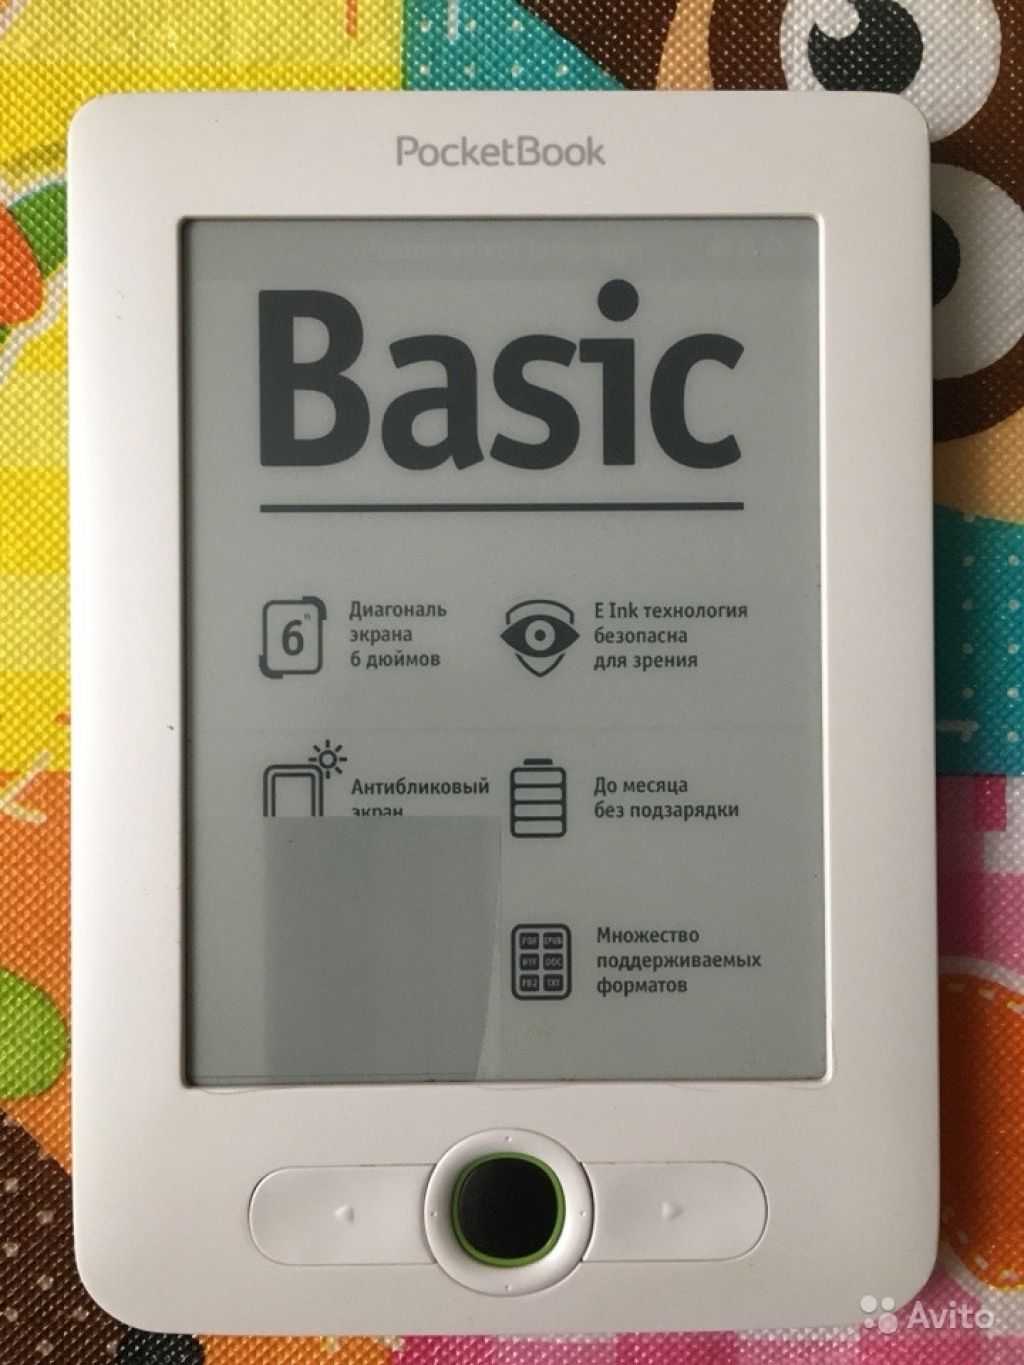 Электронный книга PocketBook Basic (613) - подробные характеристики обзоры видео фото Цены в интернет-магазинах где можно купить электронную книгу PocketBook Basic (613)